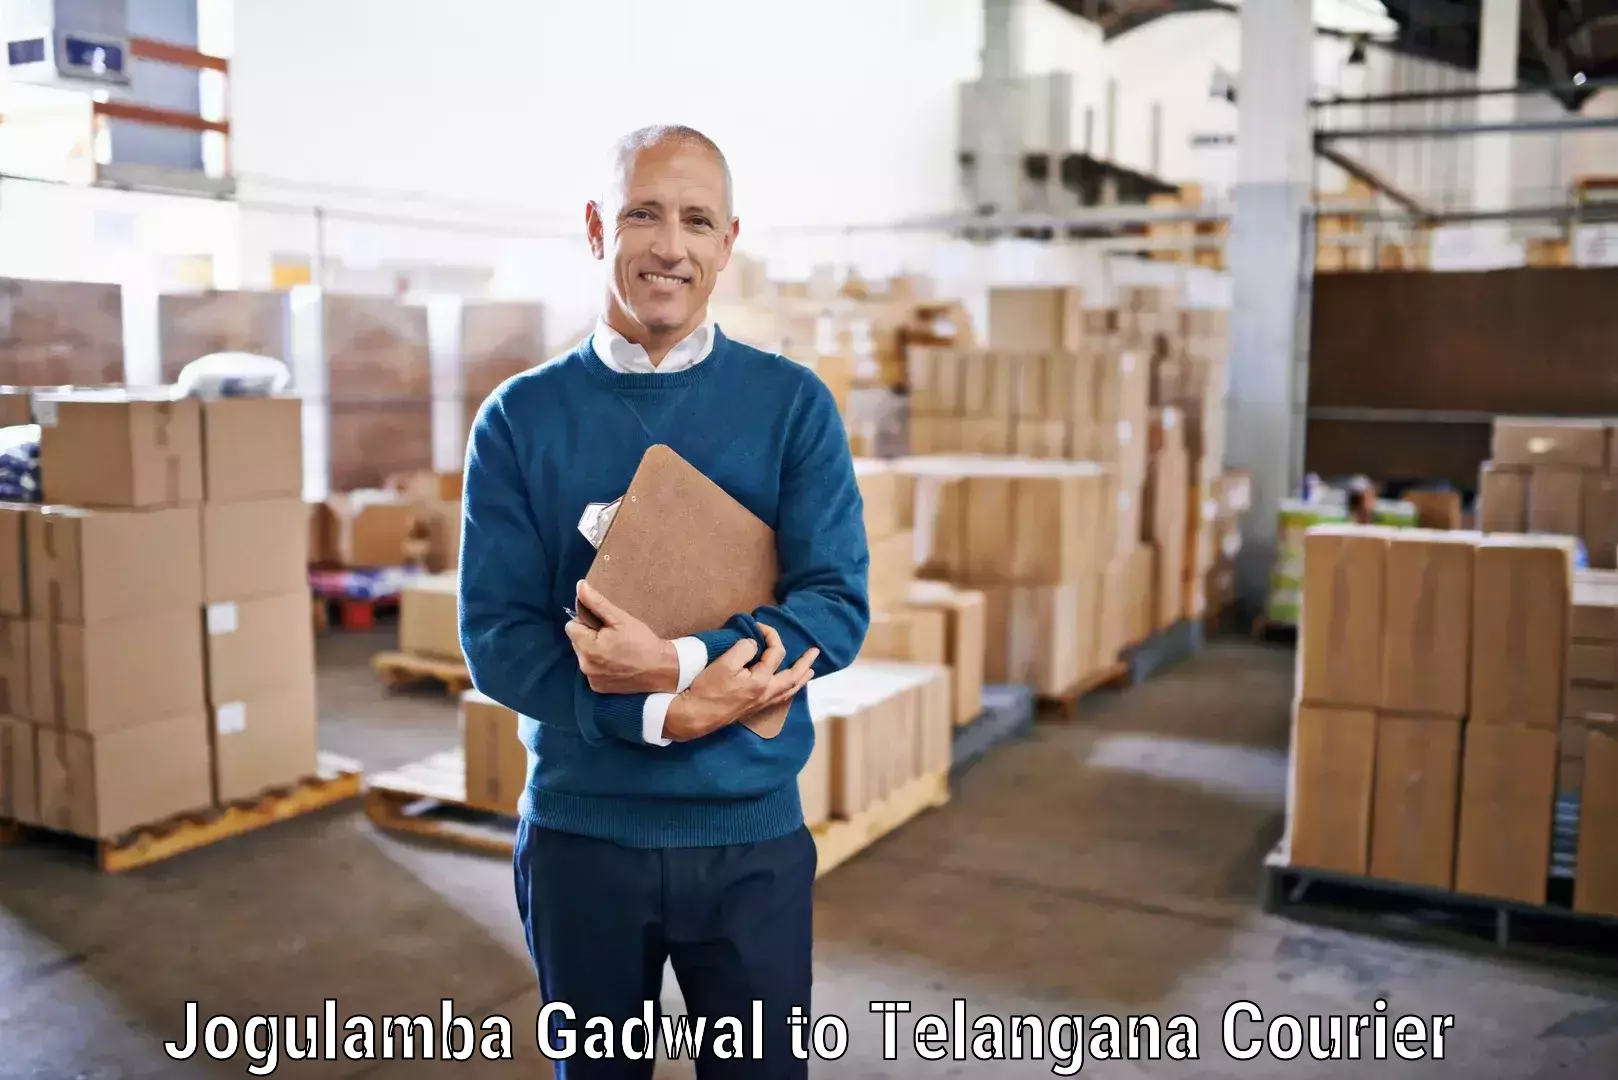 Personalized courier experiences Jogulamba Gadwal to Patancheru